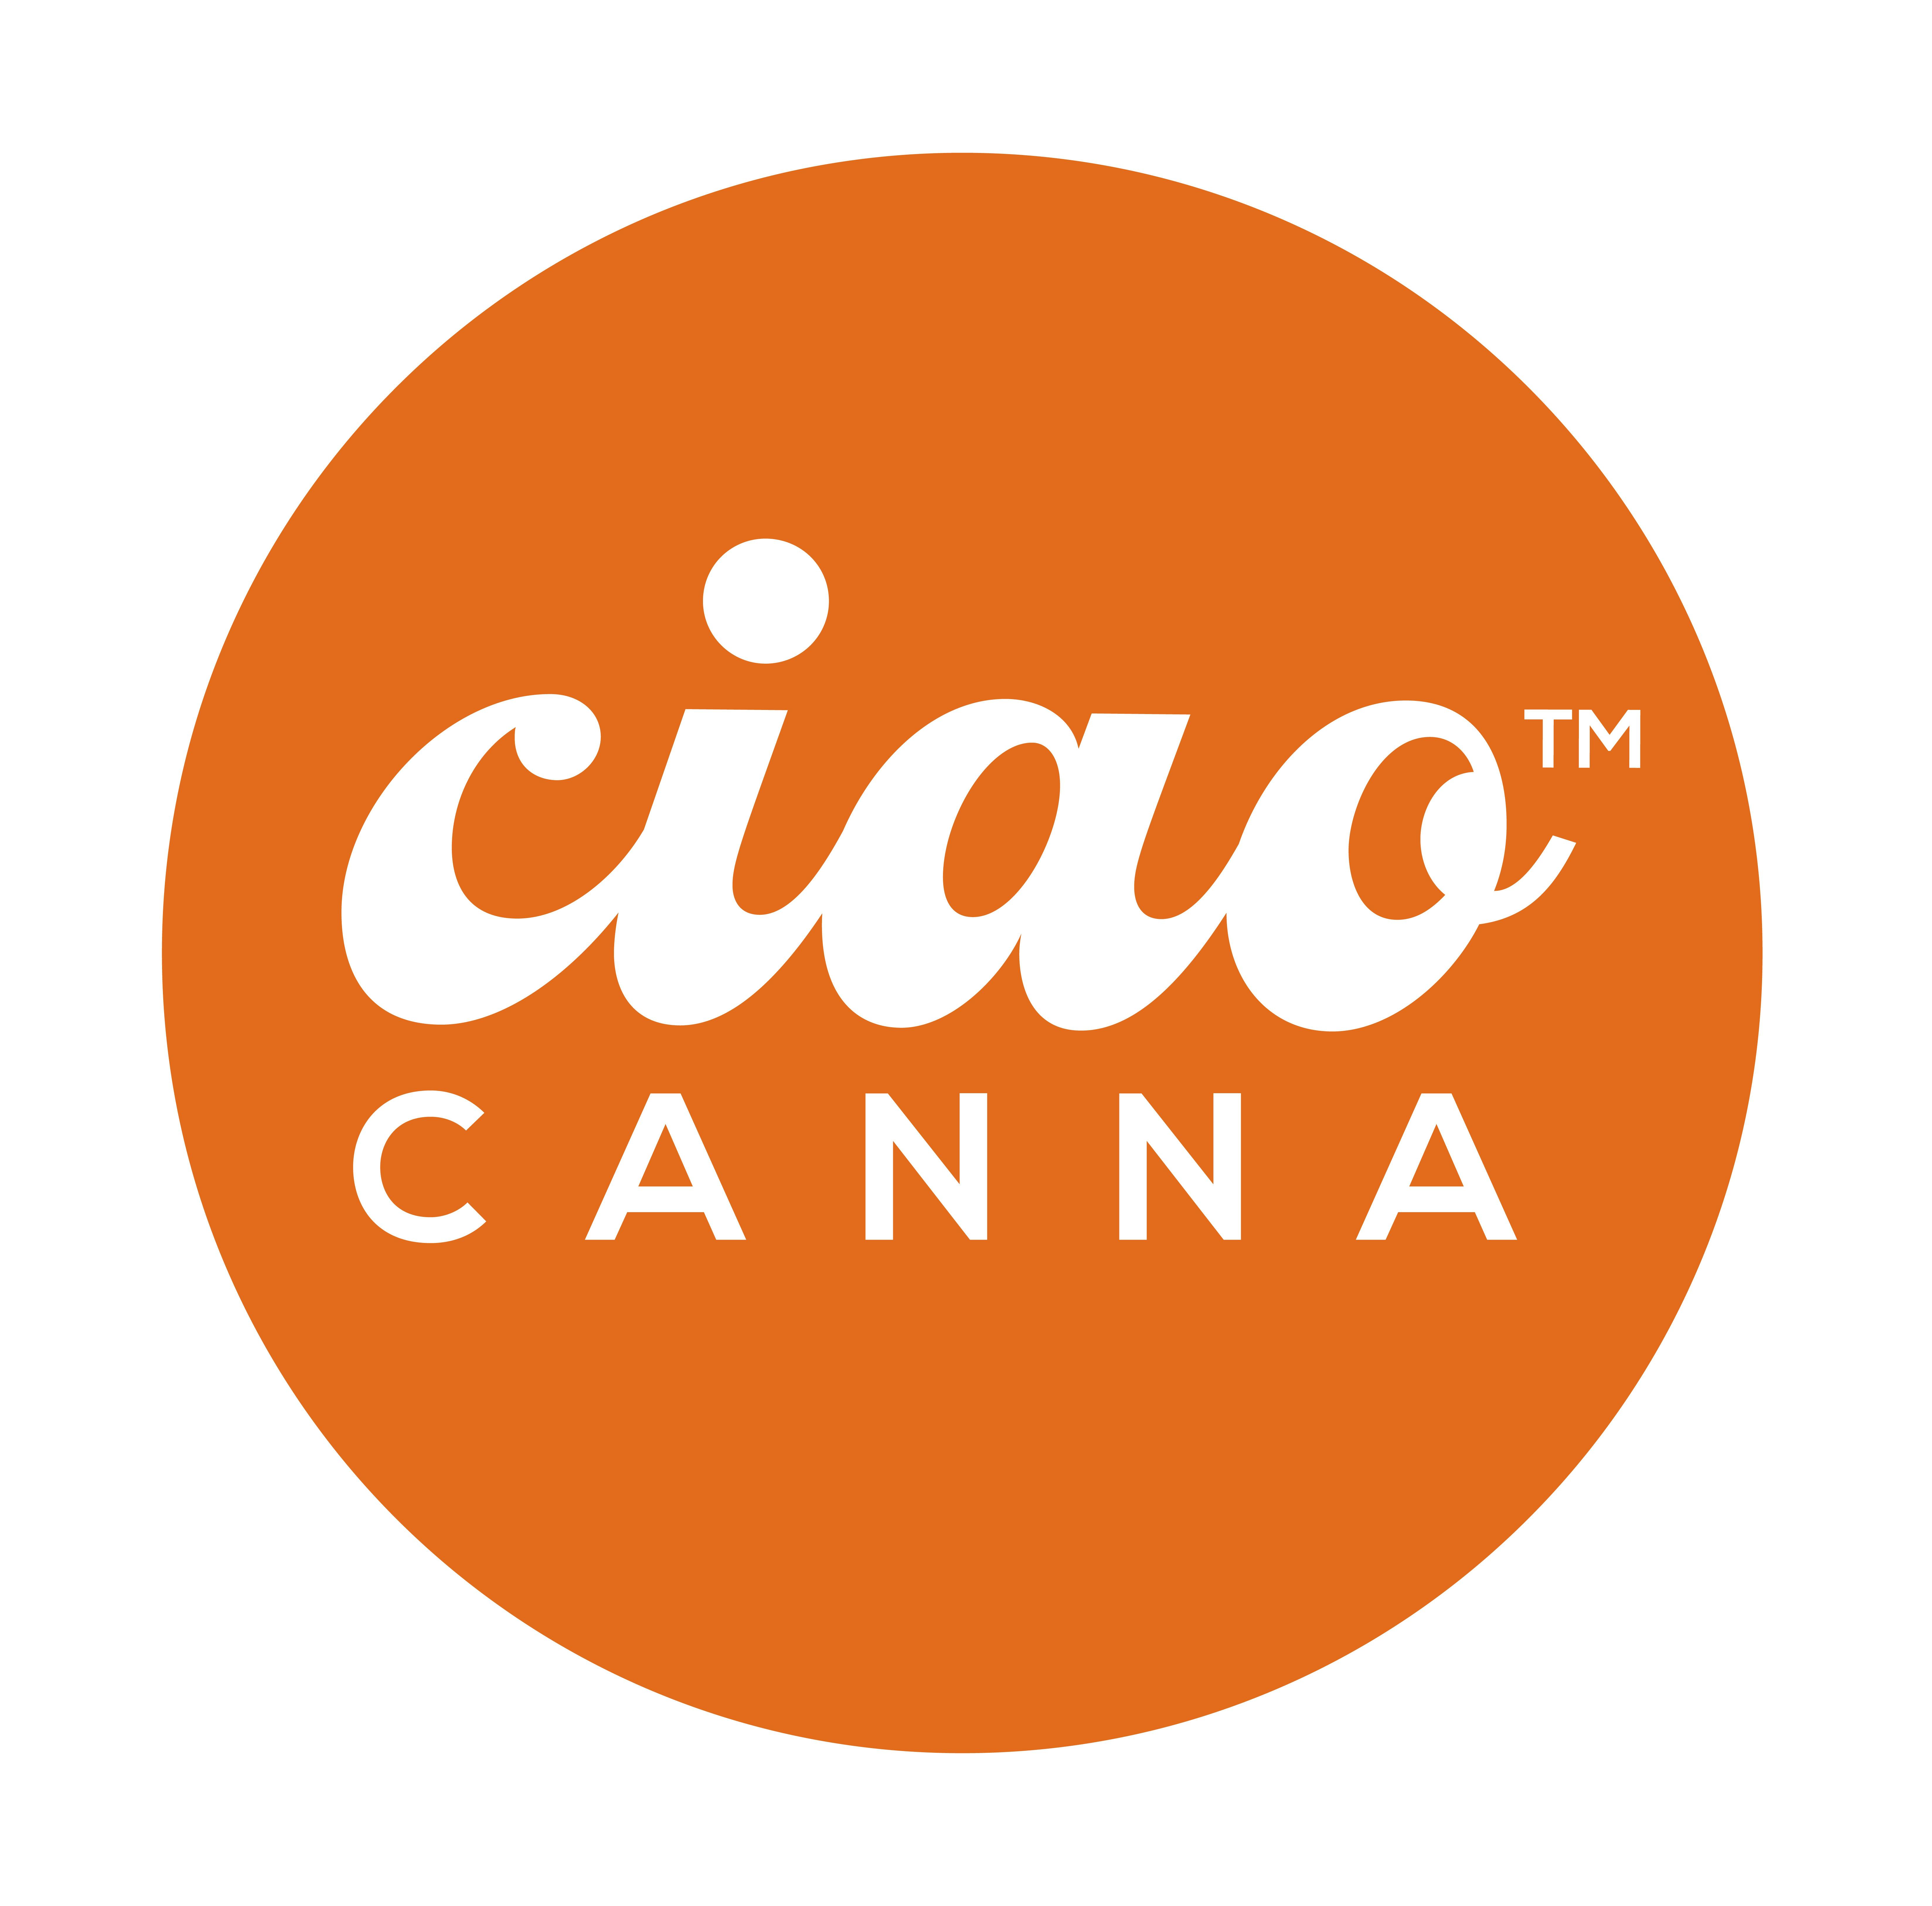 Ciao Canna logo